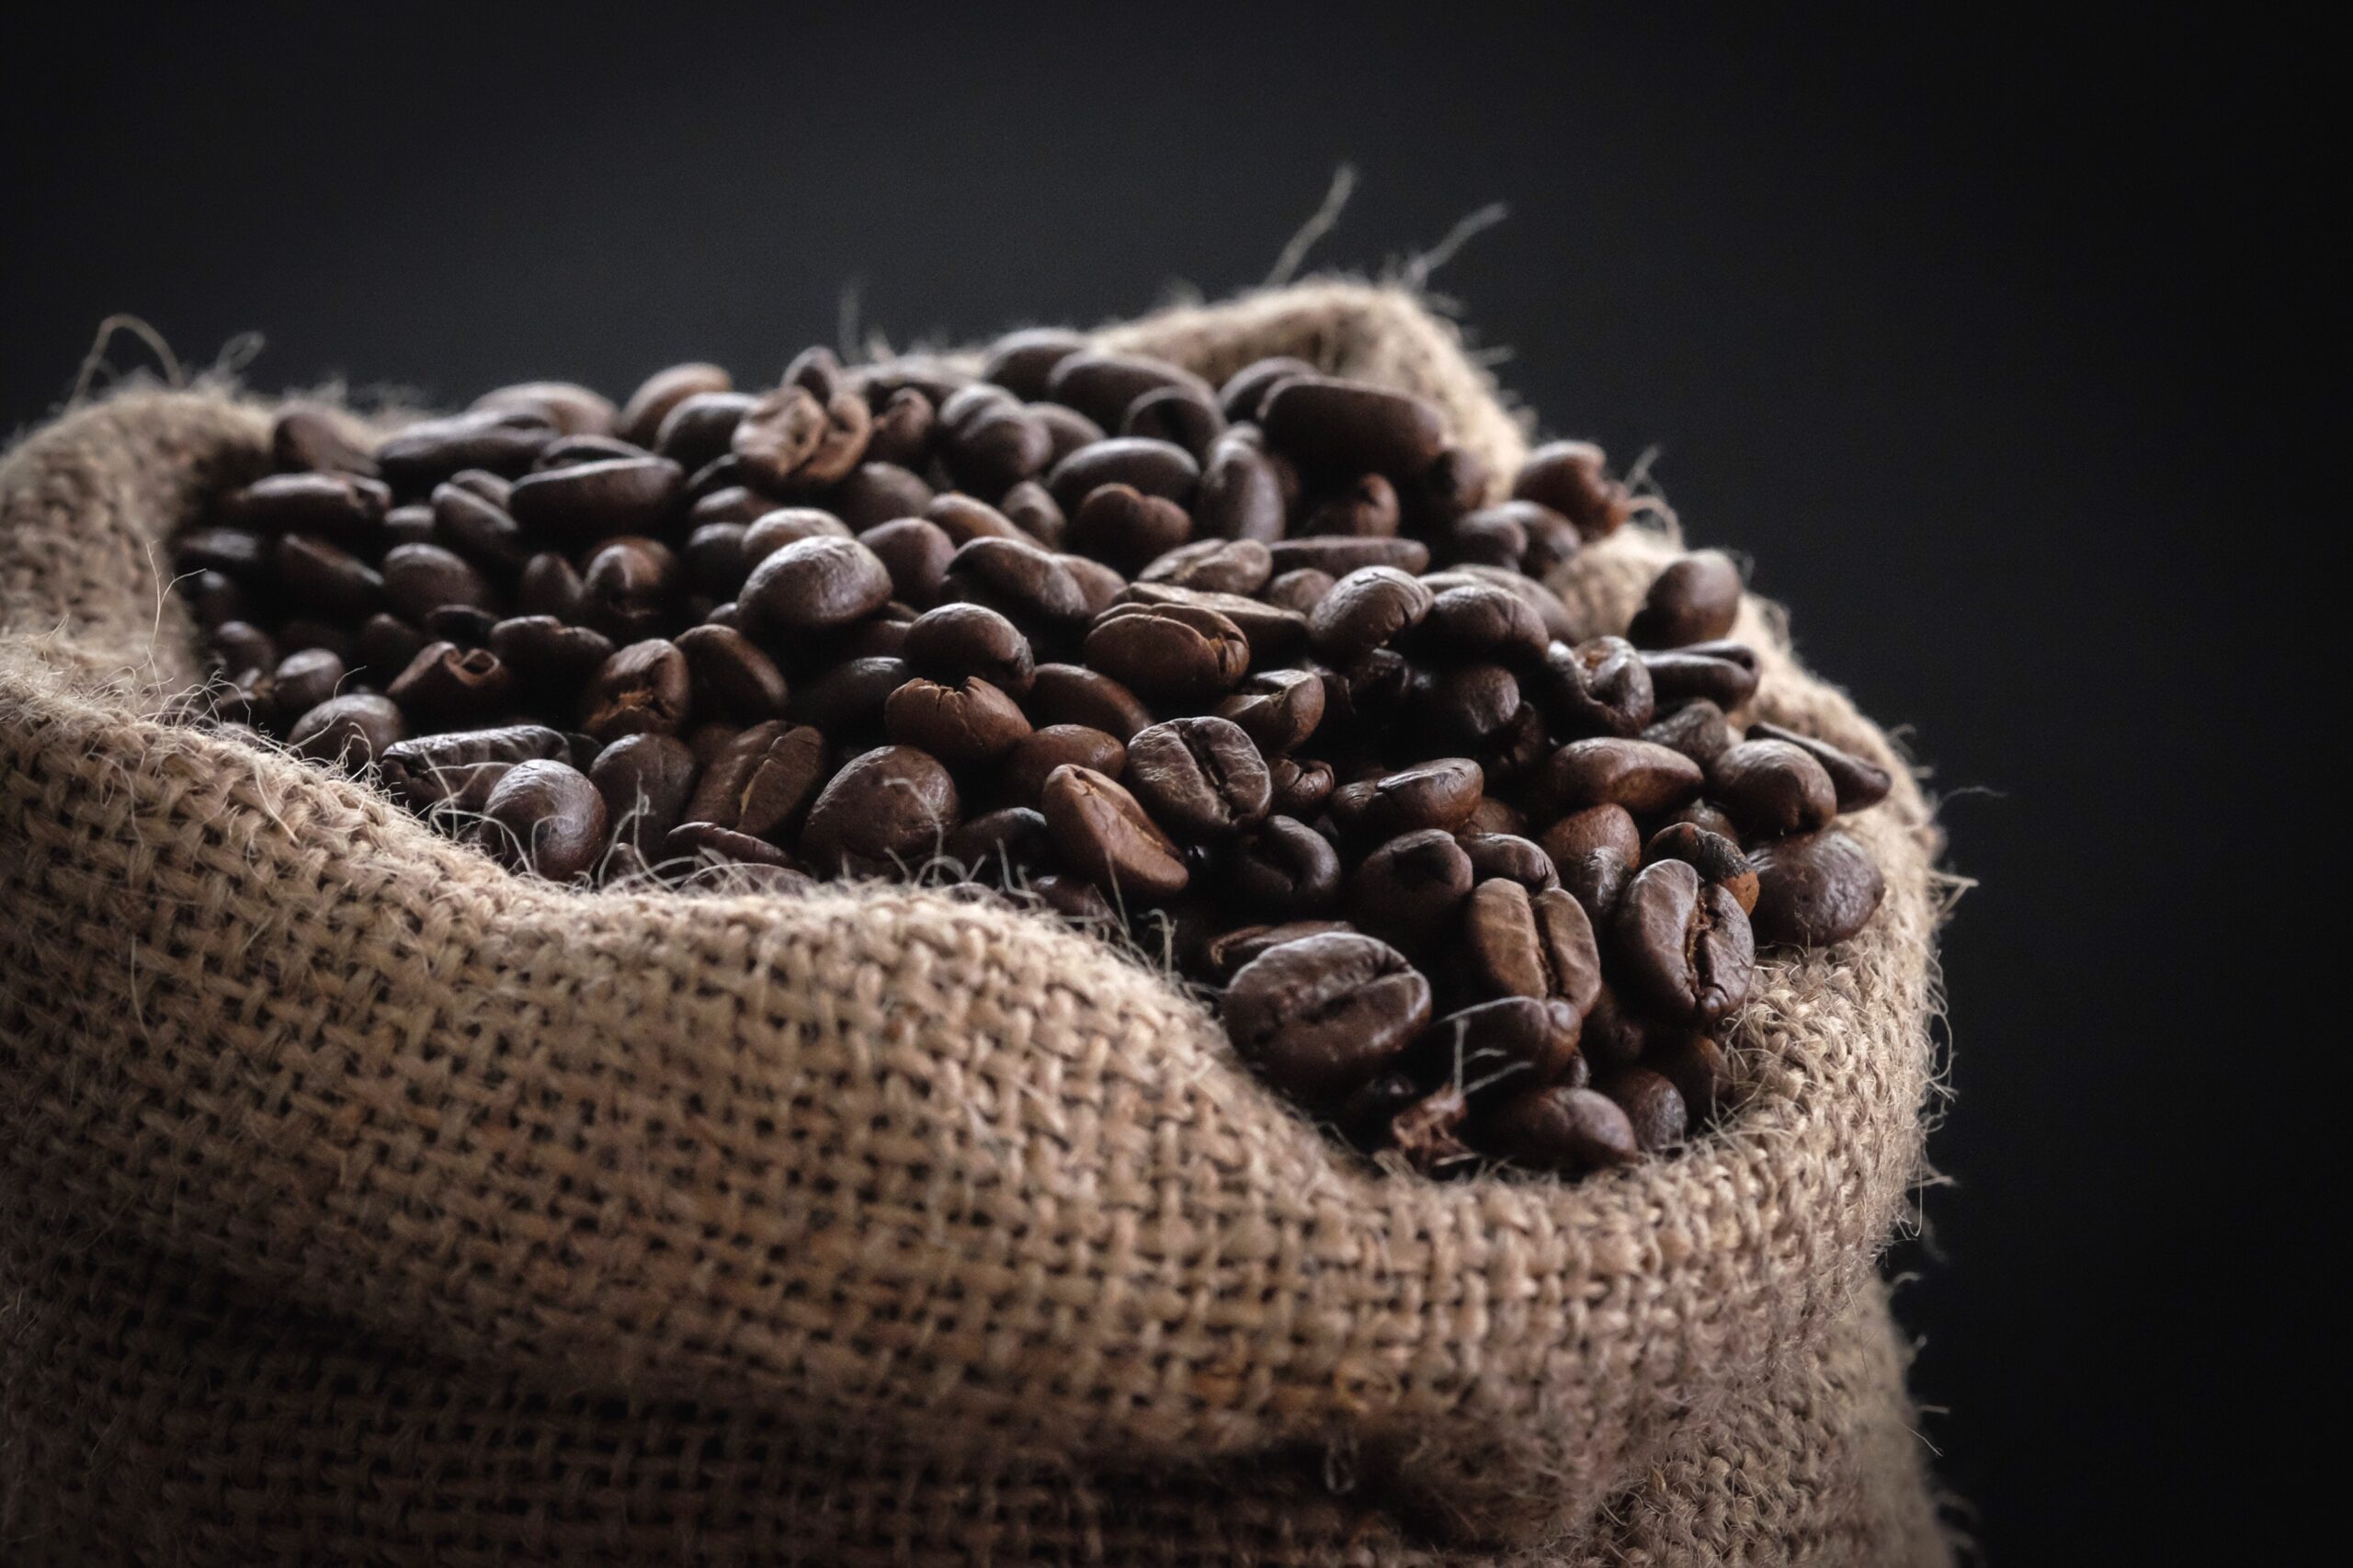 Historia del café: En el pasado, los bebedores de café sufrían persecución por parte de las autoridades y corrían el riesgo de perder la vida.